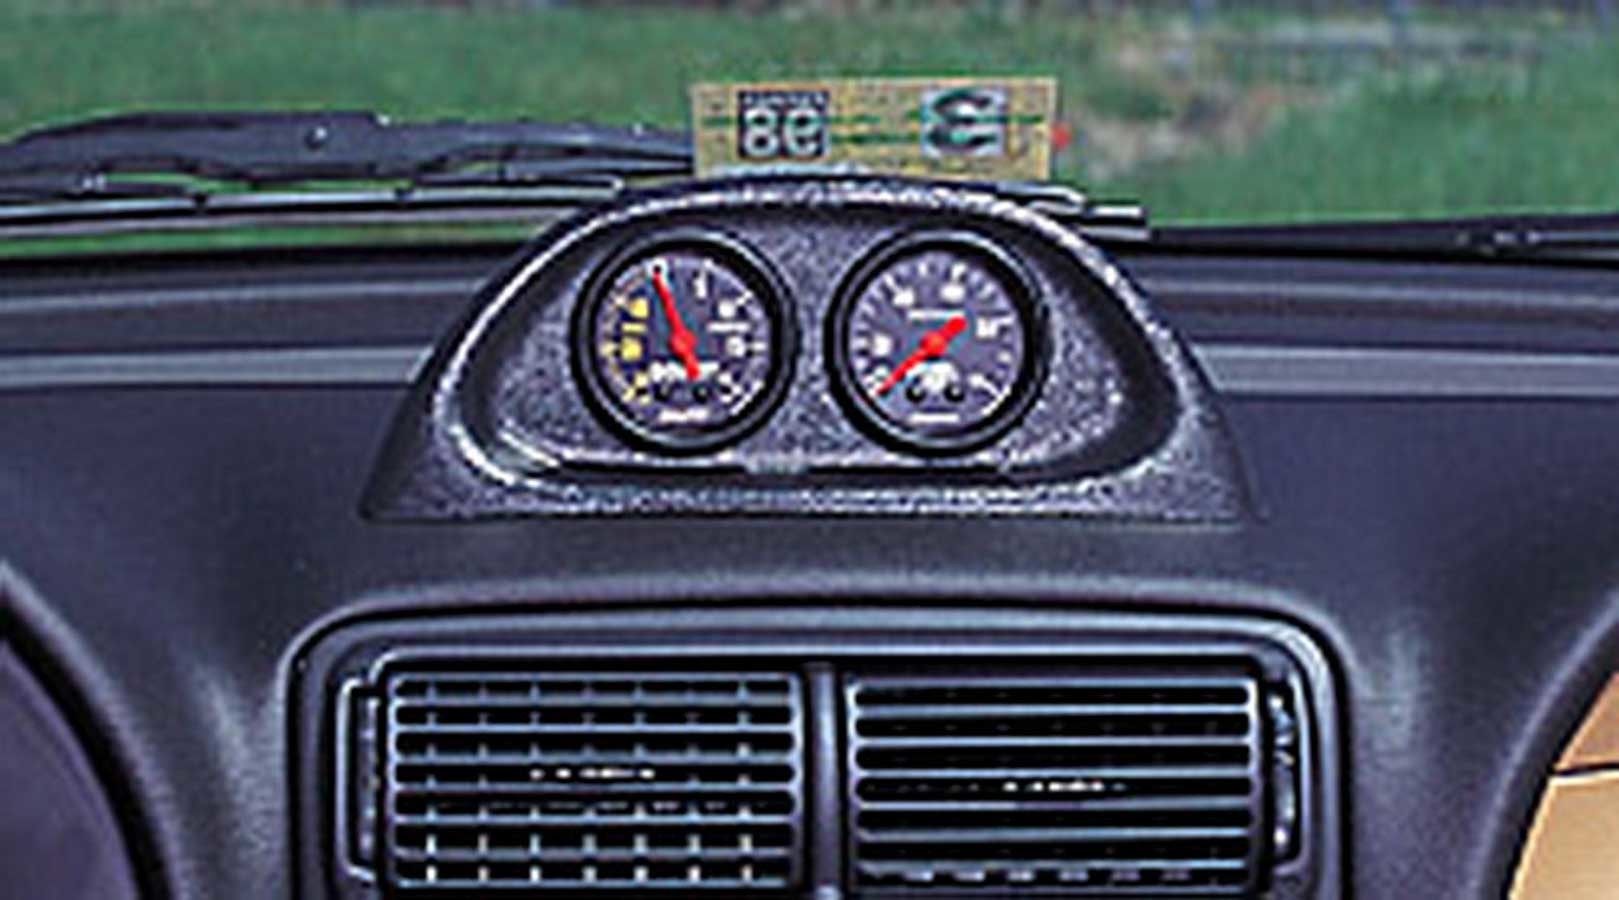 Auto Meter Gauge Pod, Gauge Works, Two 2-1/16" Diameter Gauges, Dash, Plastic, Black, Ford Mustang 1994-2004, Each